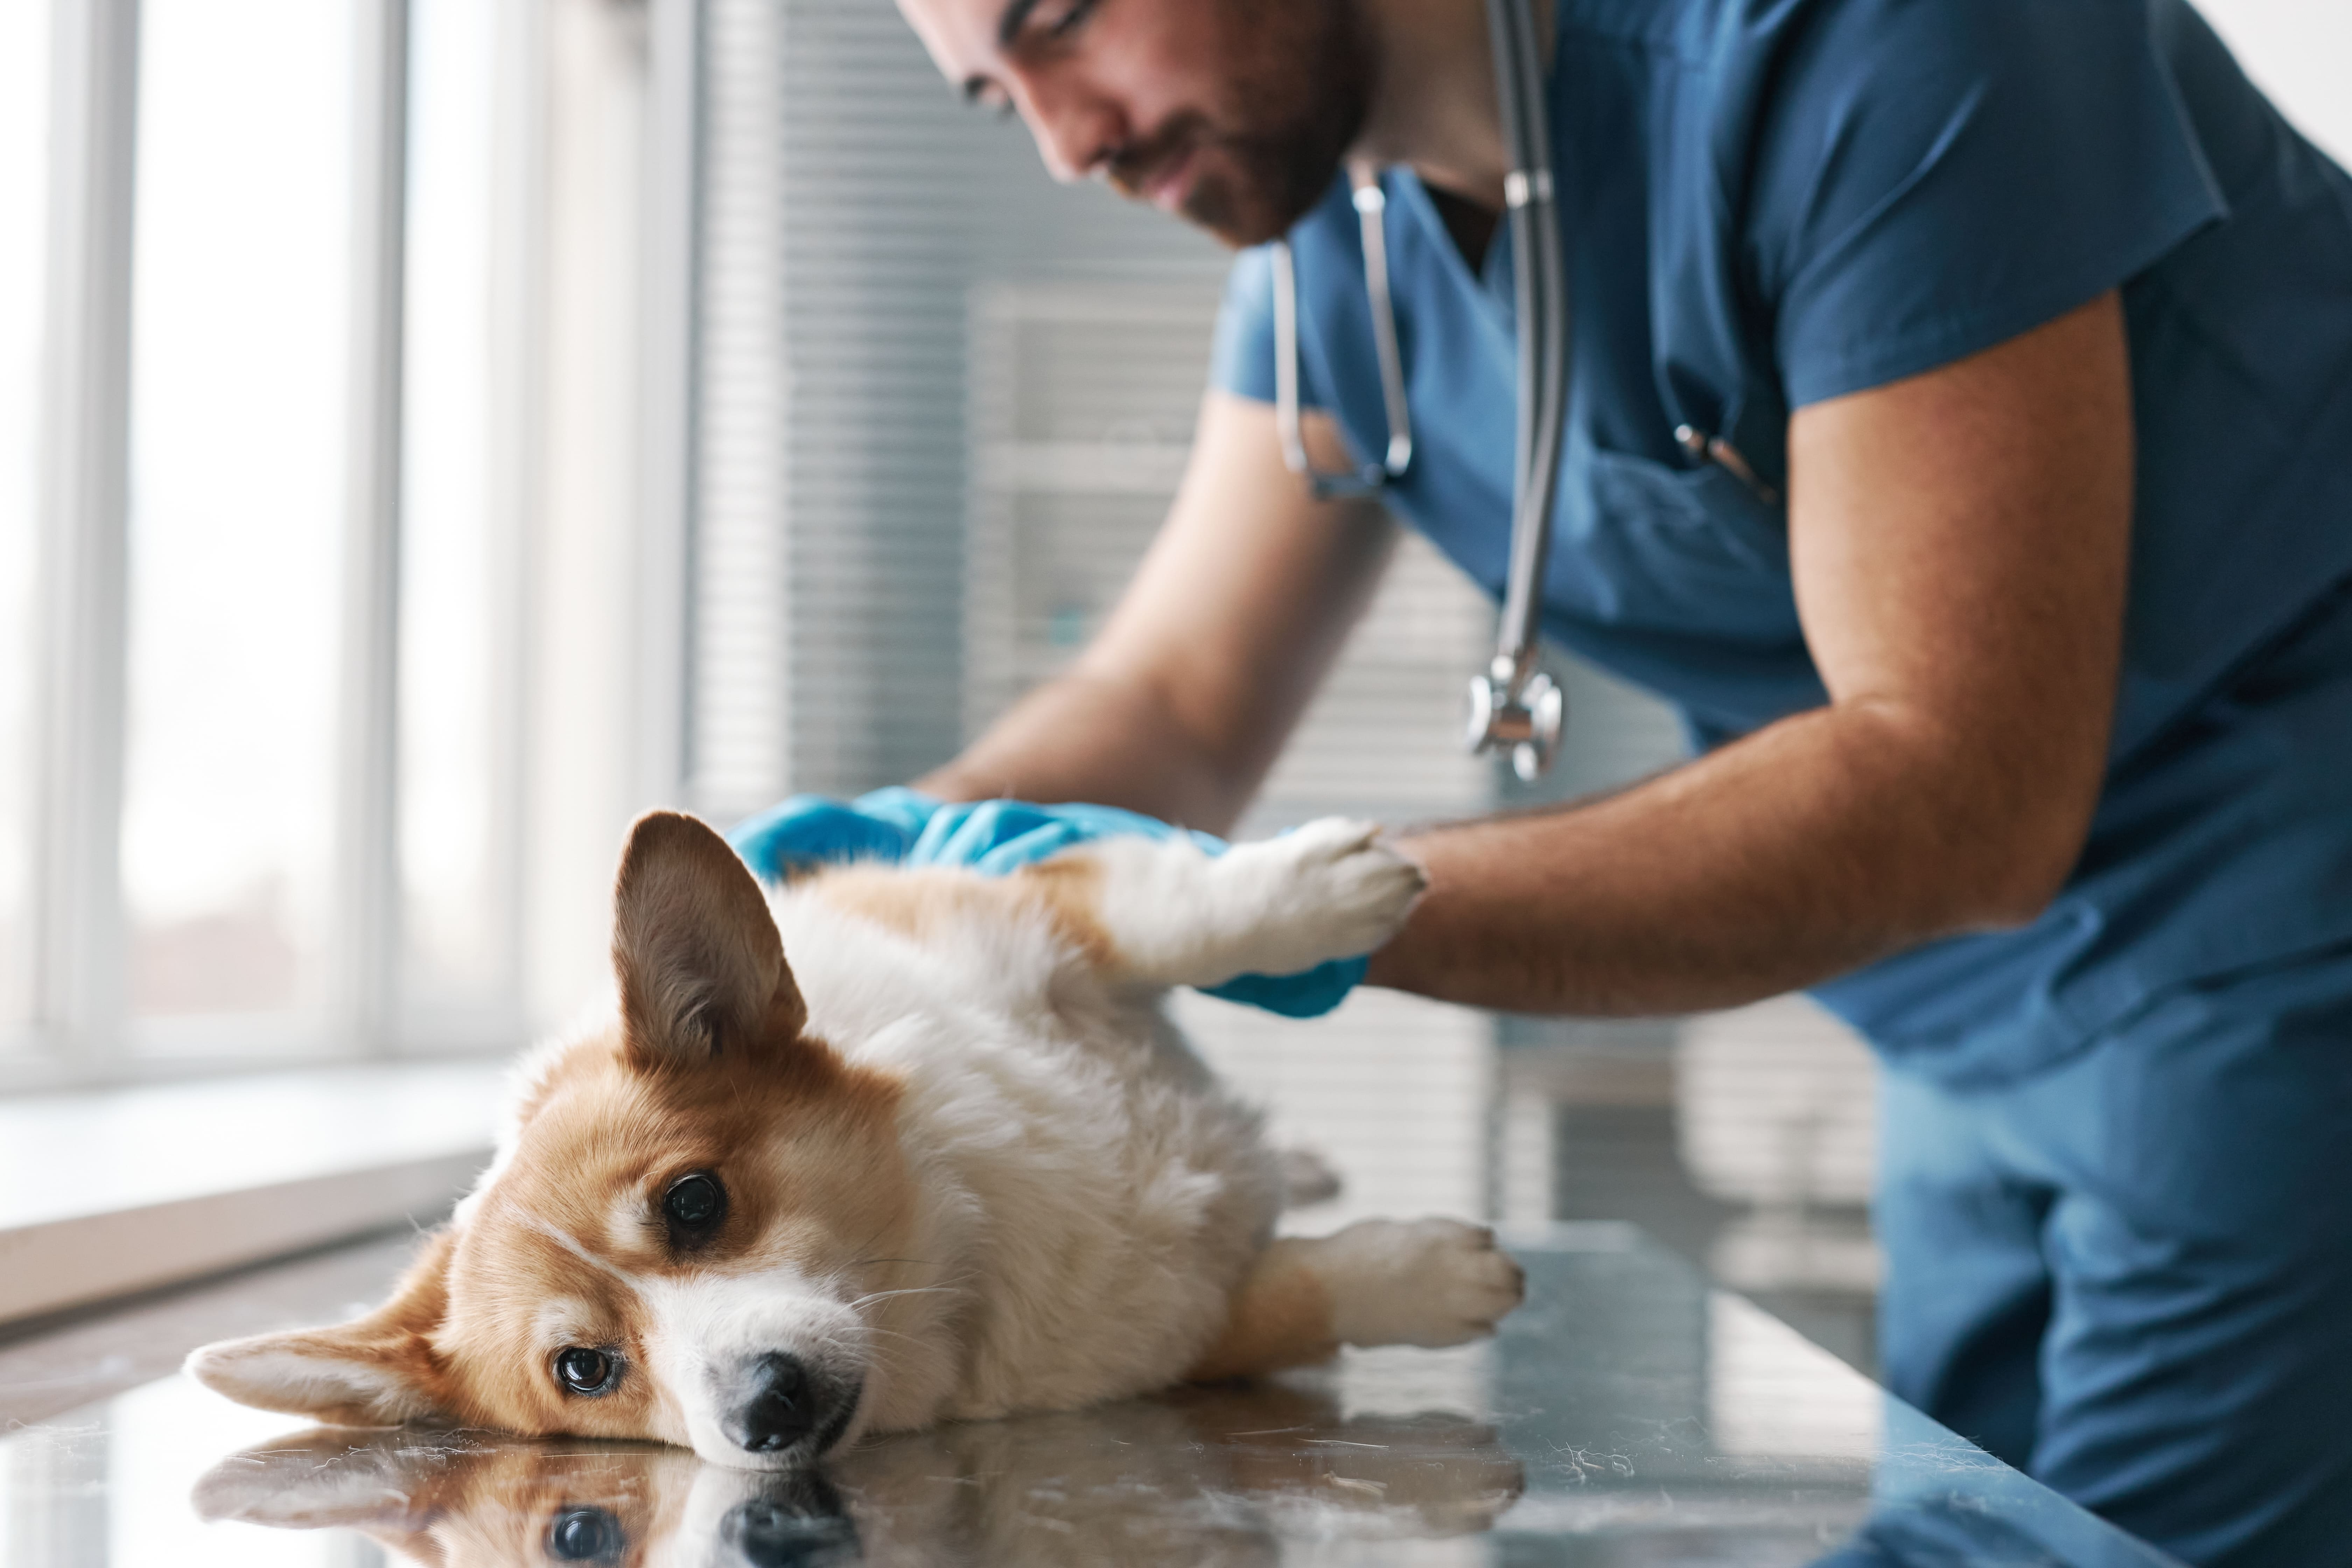 Imagem de um cachorro da raça Corgi branco e marrom, deitado de lado em uma mesa veterinária, sendo analisado por um veterinário, com sintomas de berne.